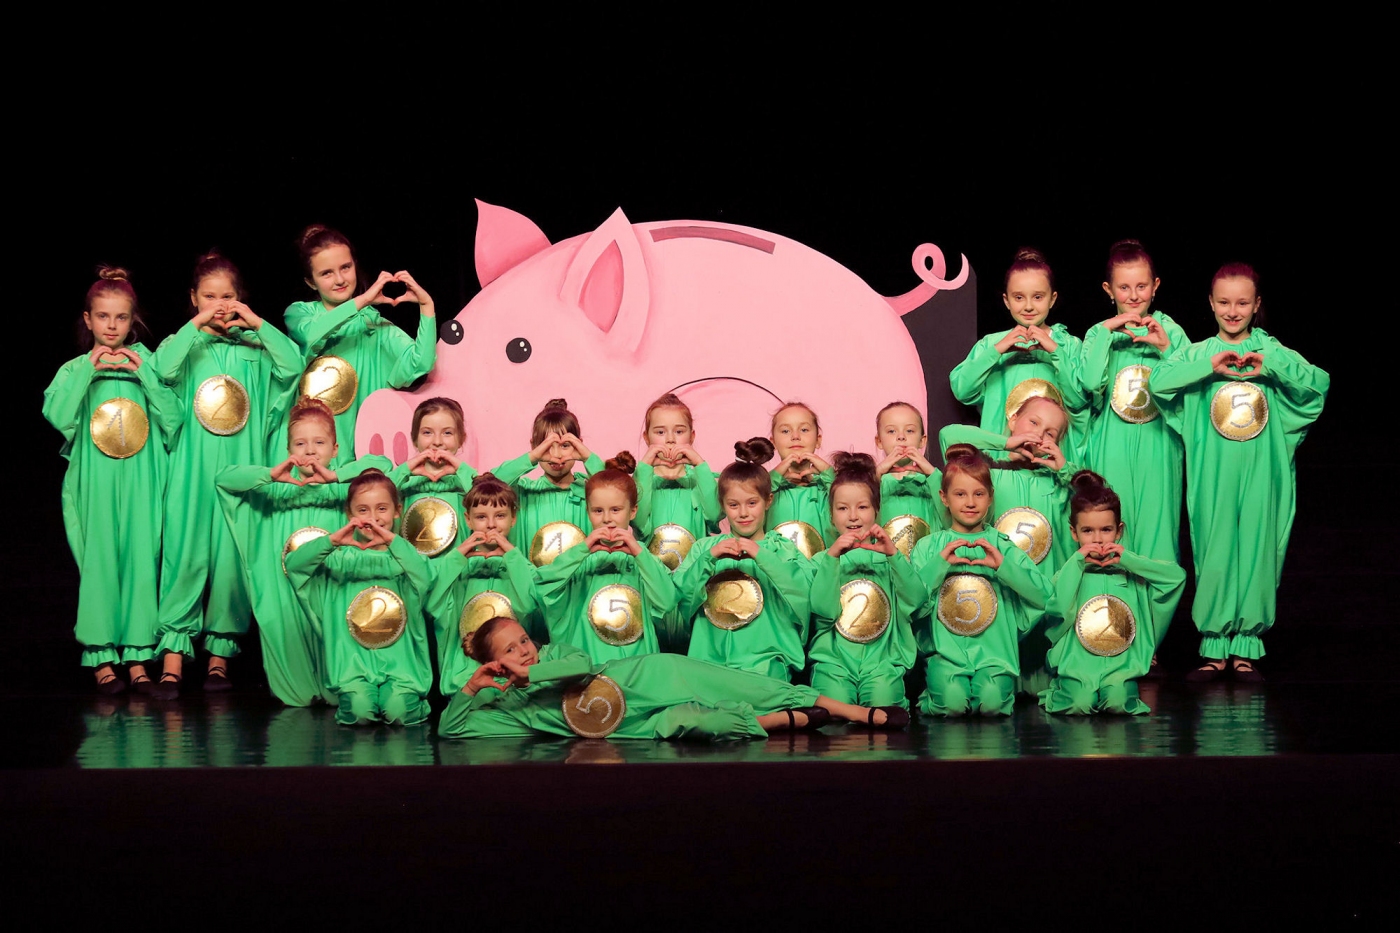 Ubrane w zielone stroje dziewczynki stoją na scenie na tle dużej różowej świnki. Ręce mają ułożone w serce